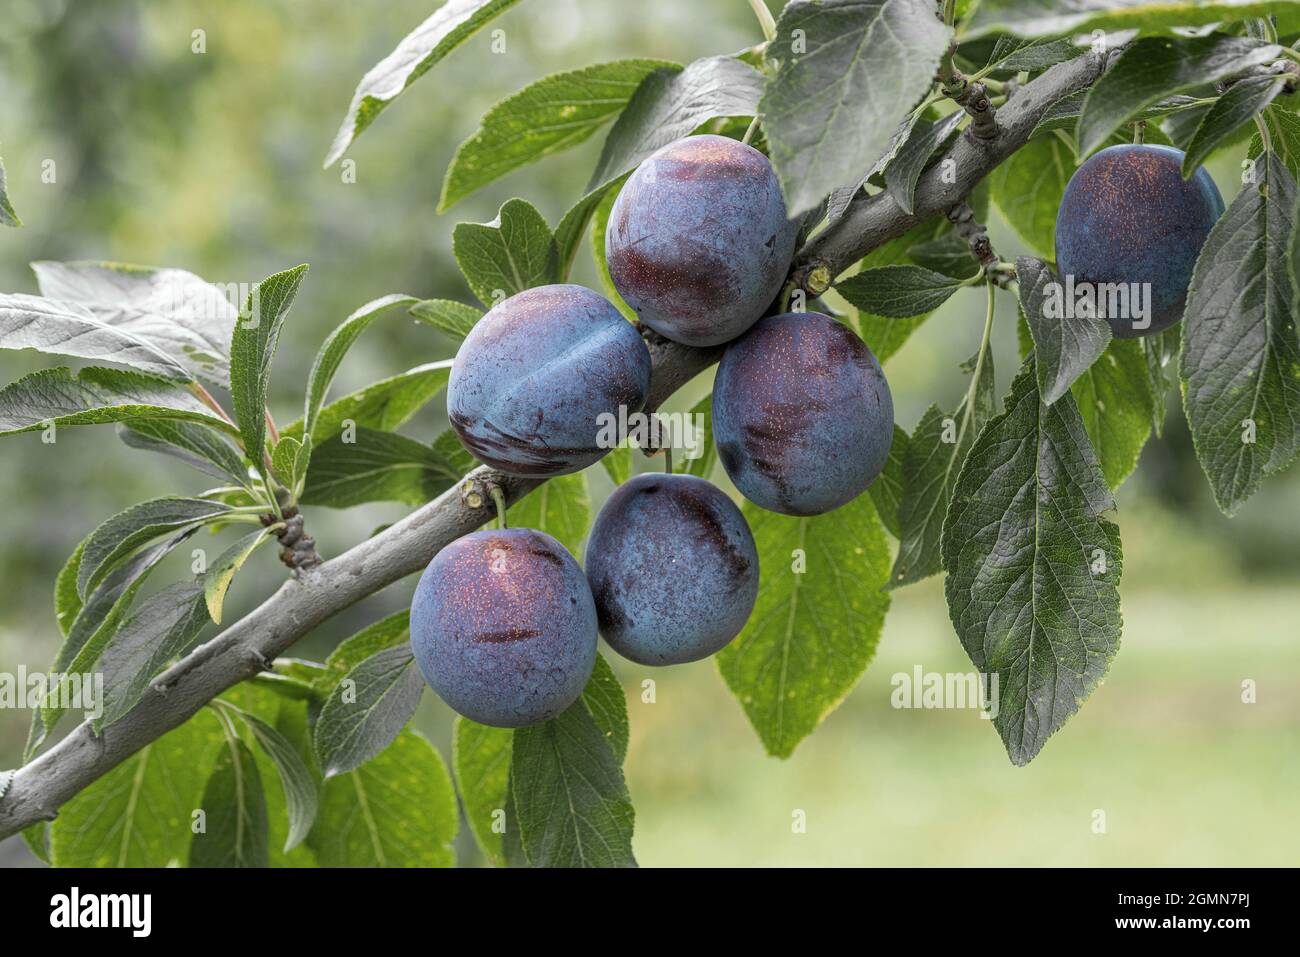 Europäische Pflaume (Prunus domestica 'Anna Spaeth', Prunus domestica Anna Spaeth), Pflaumen auf einem Zweig, Sorte Anna Spaeth Stockfoto